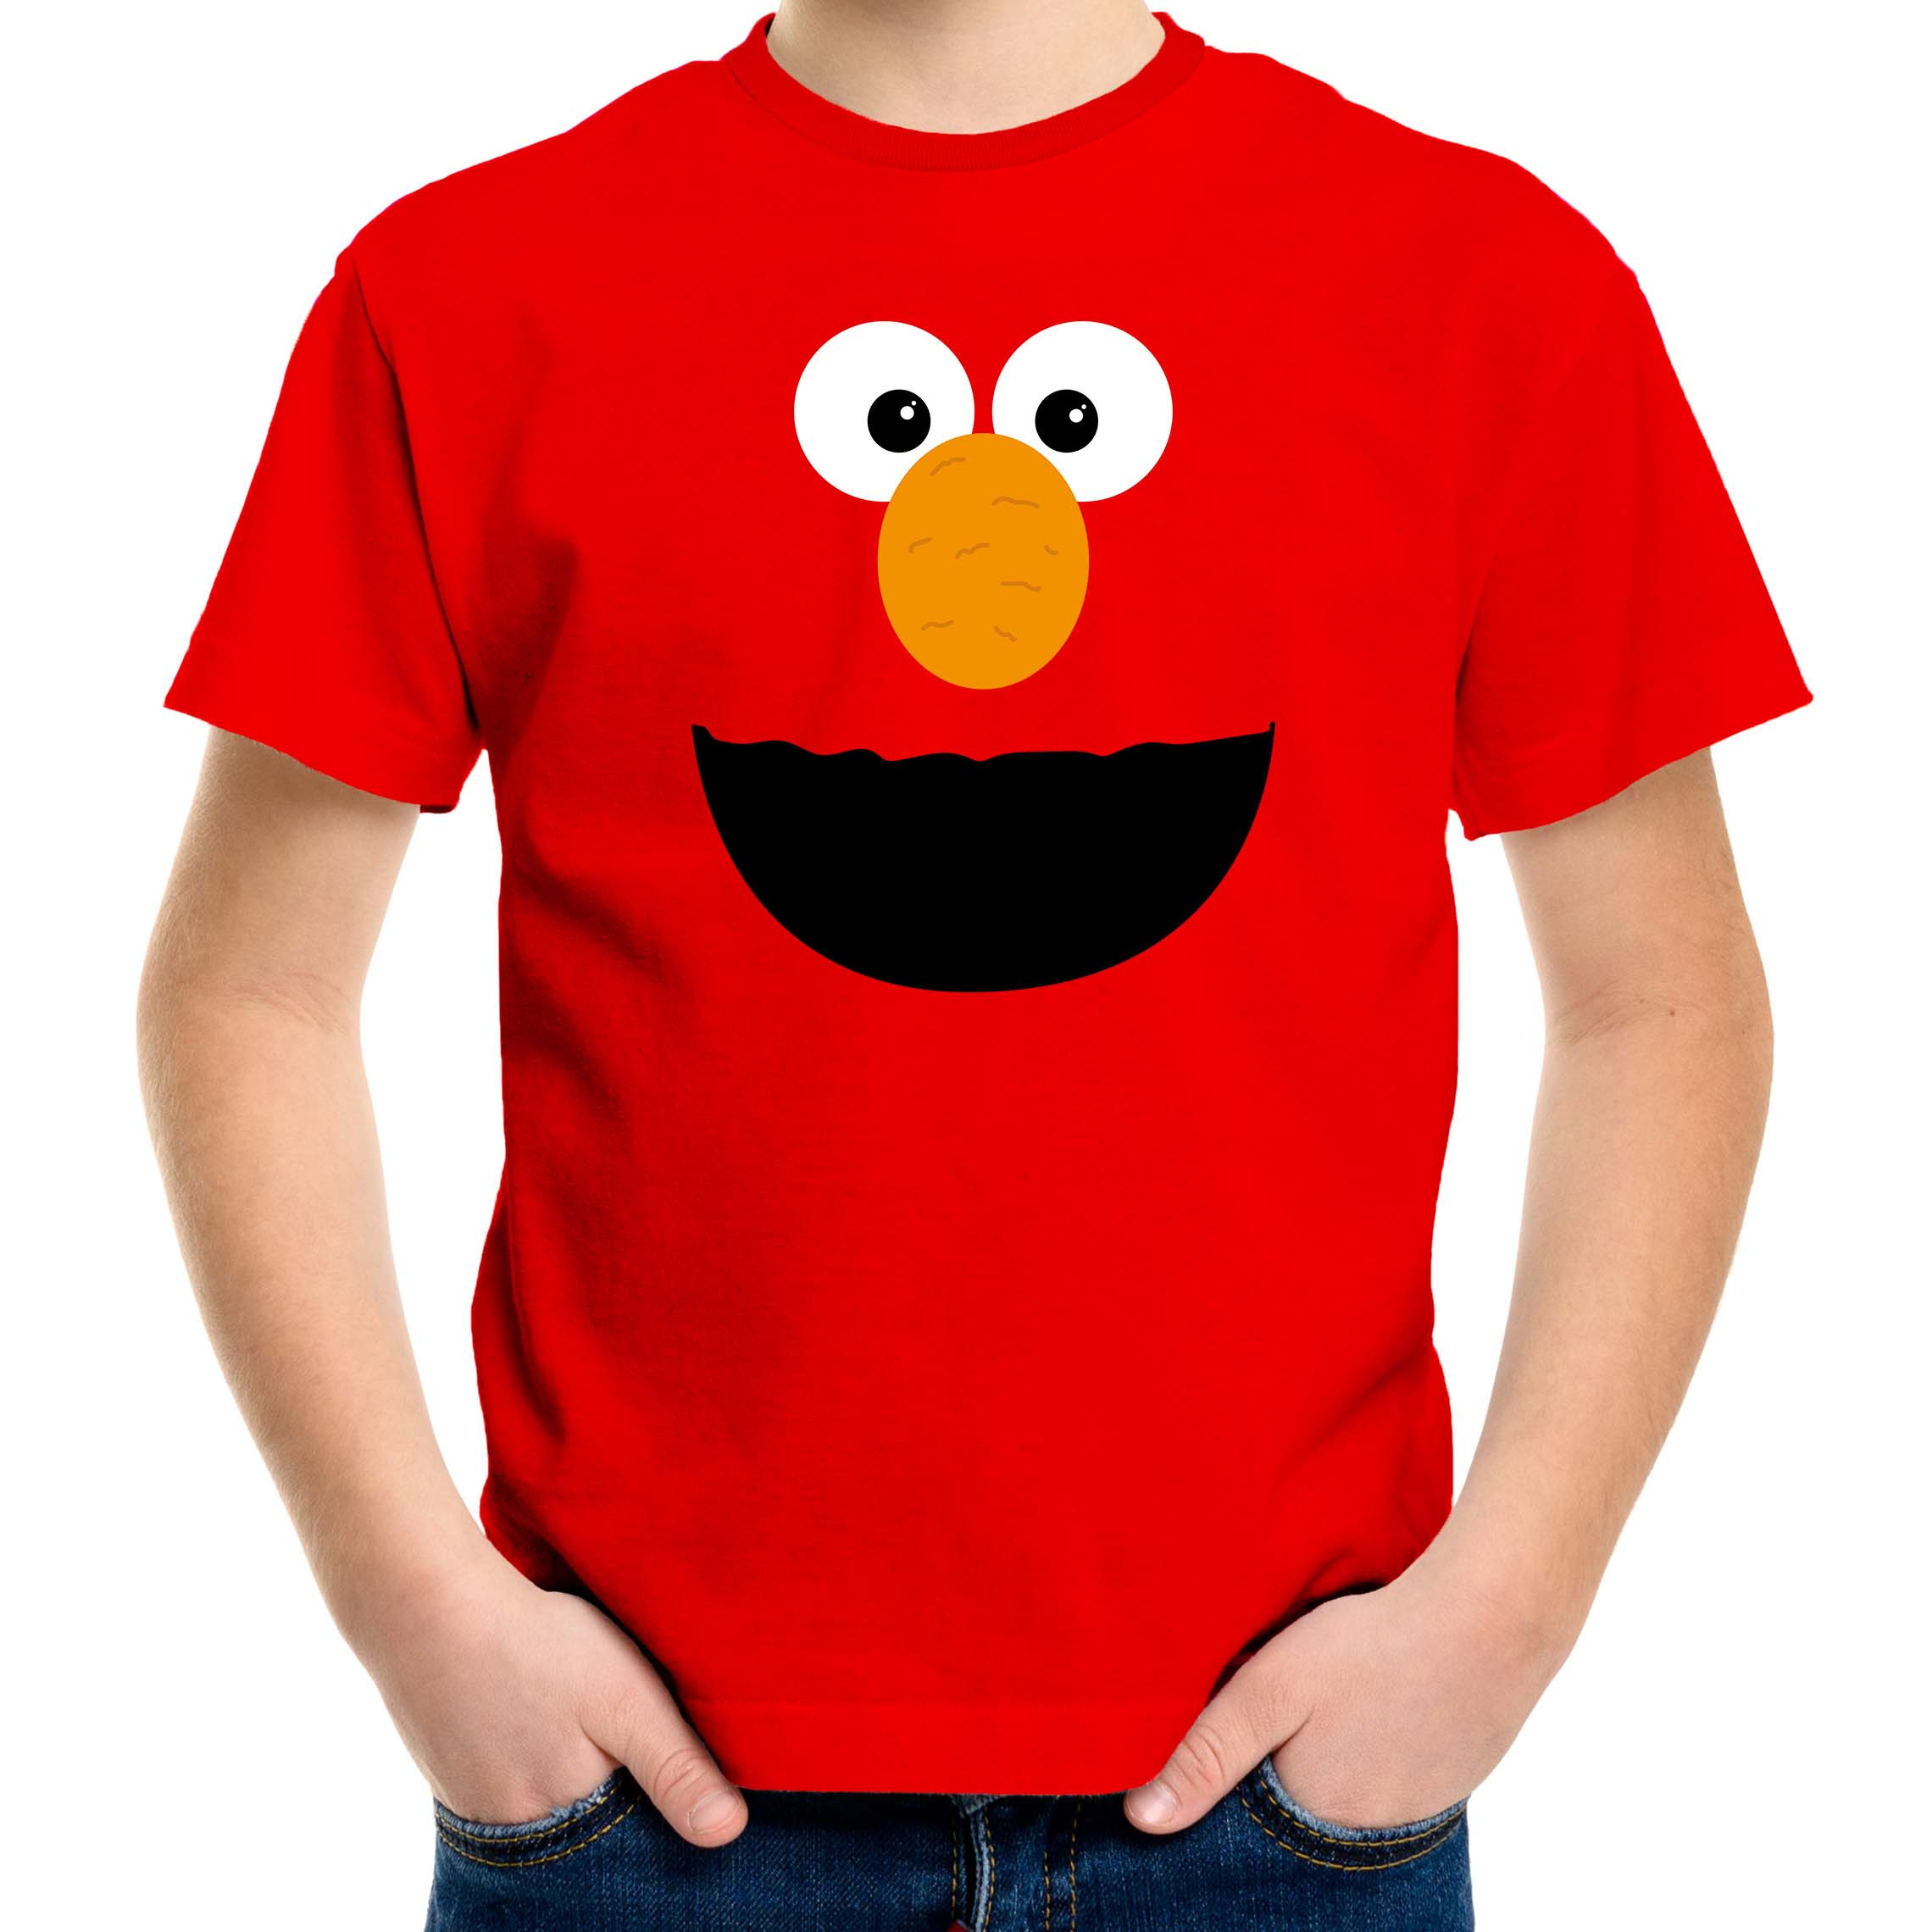 Verkleed-carnaval t-shirt rode cartoon knuffel pop voor kinderen Verkleed-kostuum shirts